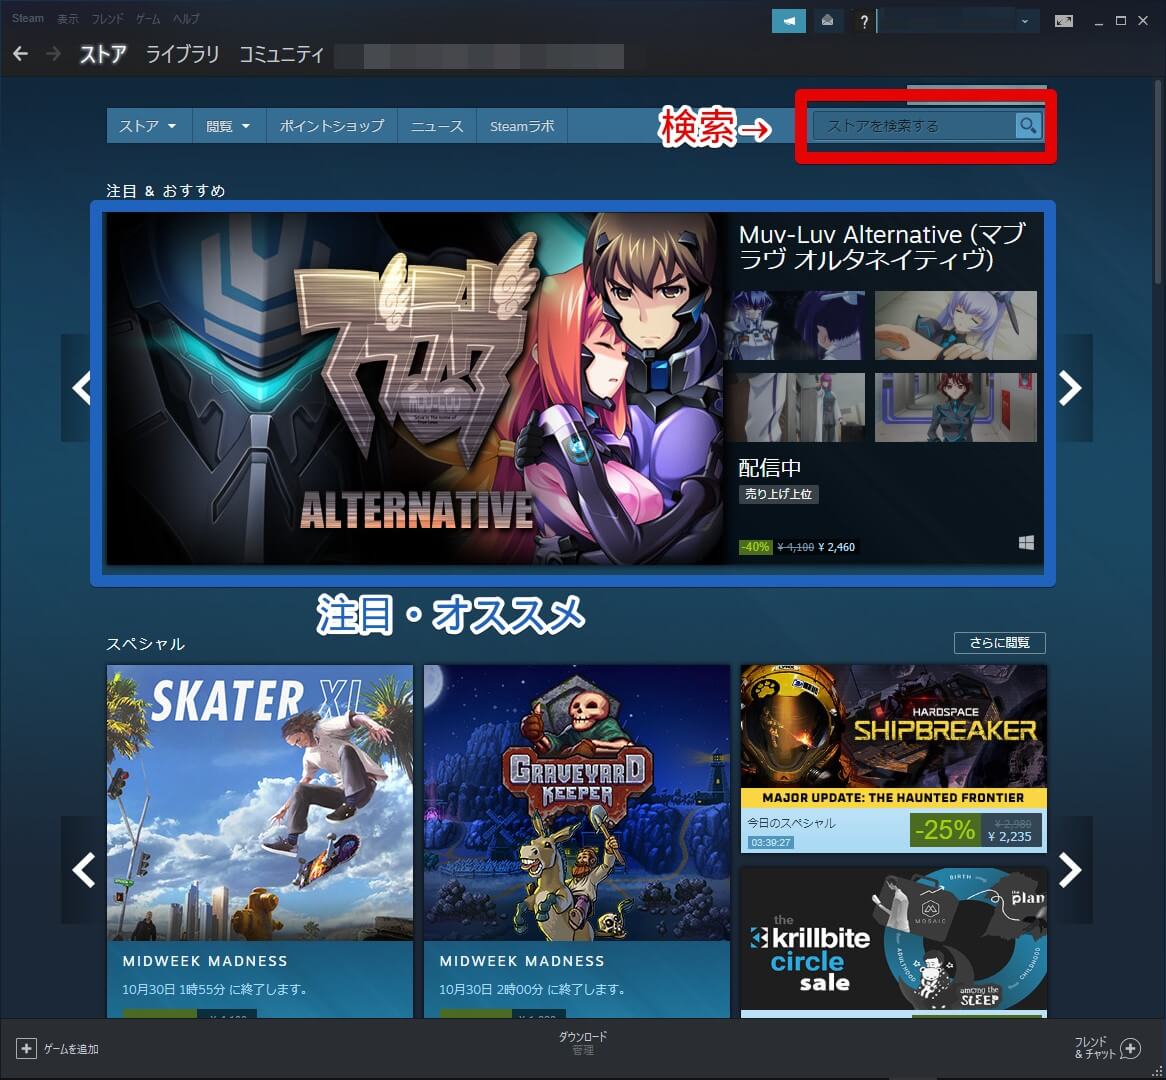 超簡単 Steamの始め方 インストール ゲーム購入までのやり方を解説 21年最新 Aketama Official Blog